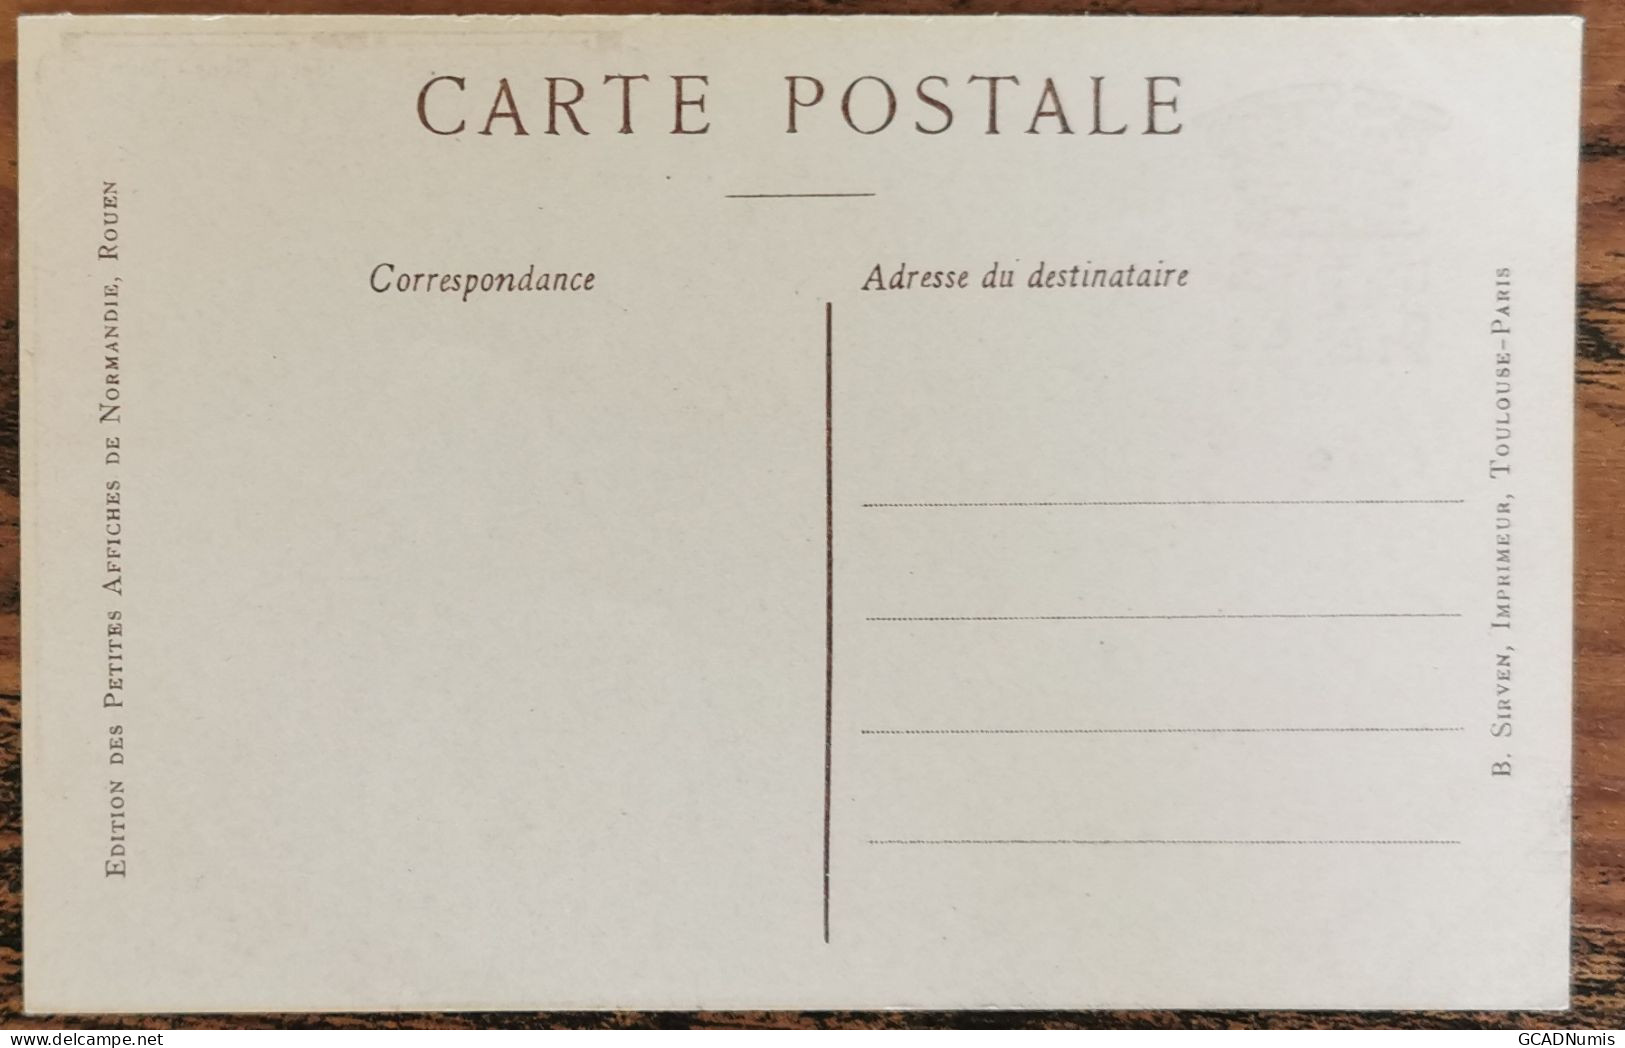 CARTE POSTALE Billet 1 Franc Chambre De Commerce De DIJON - Côte D'Or - Dijon